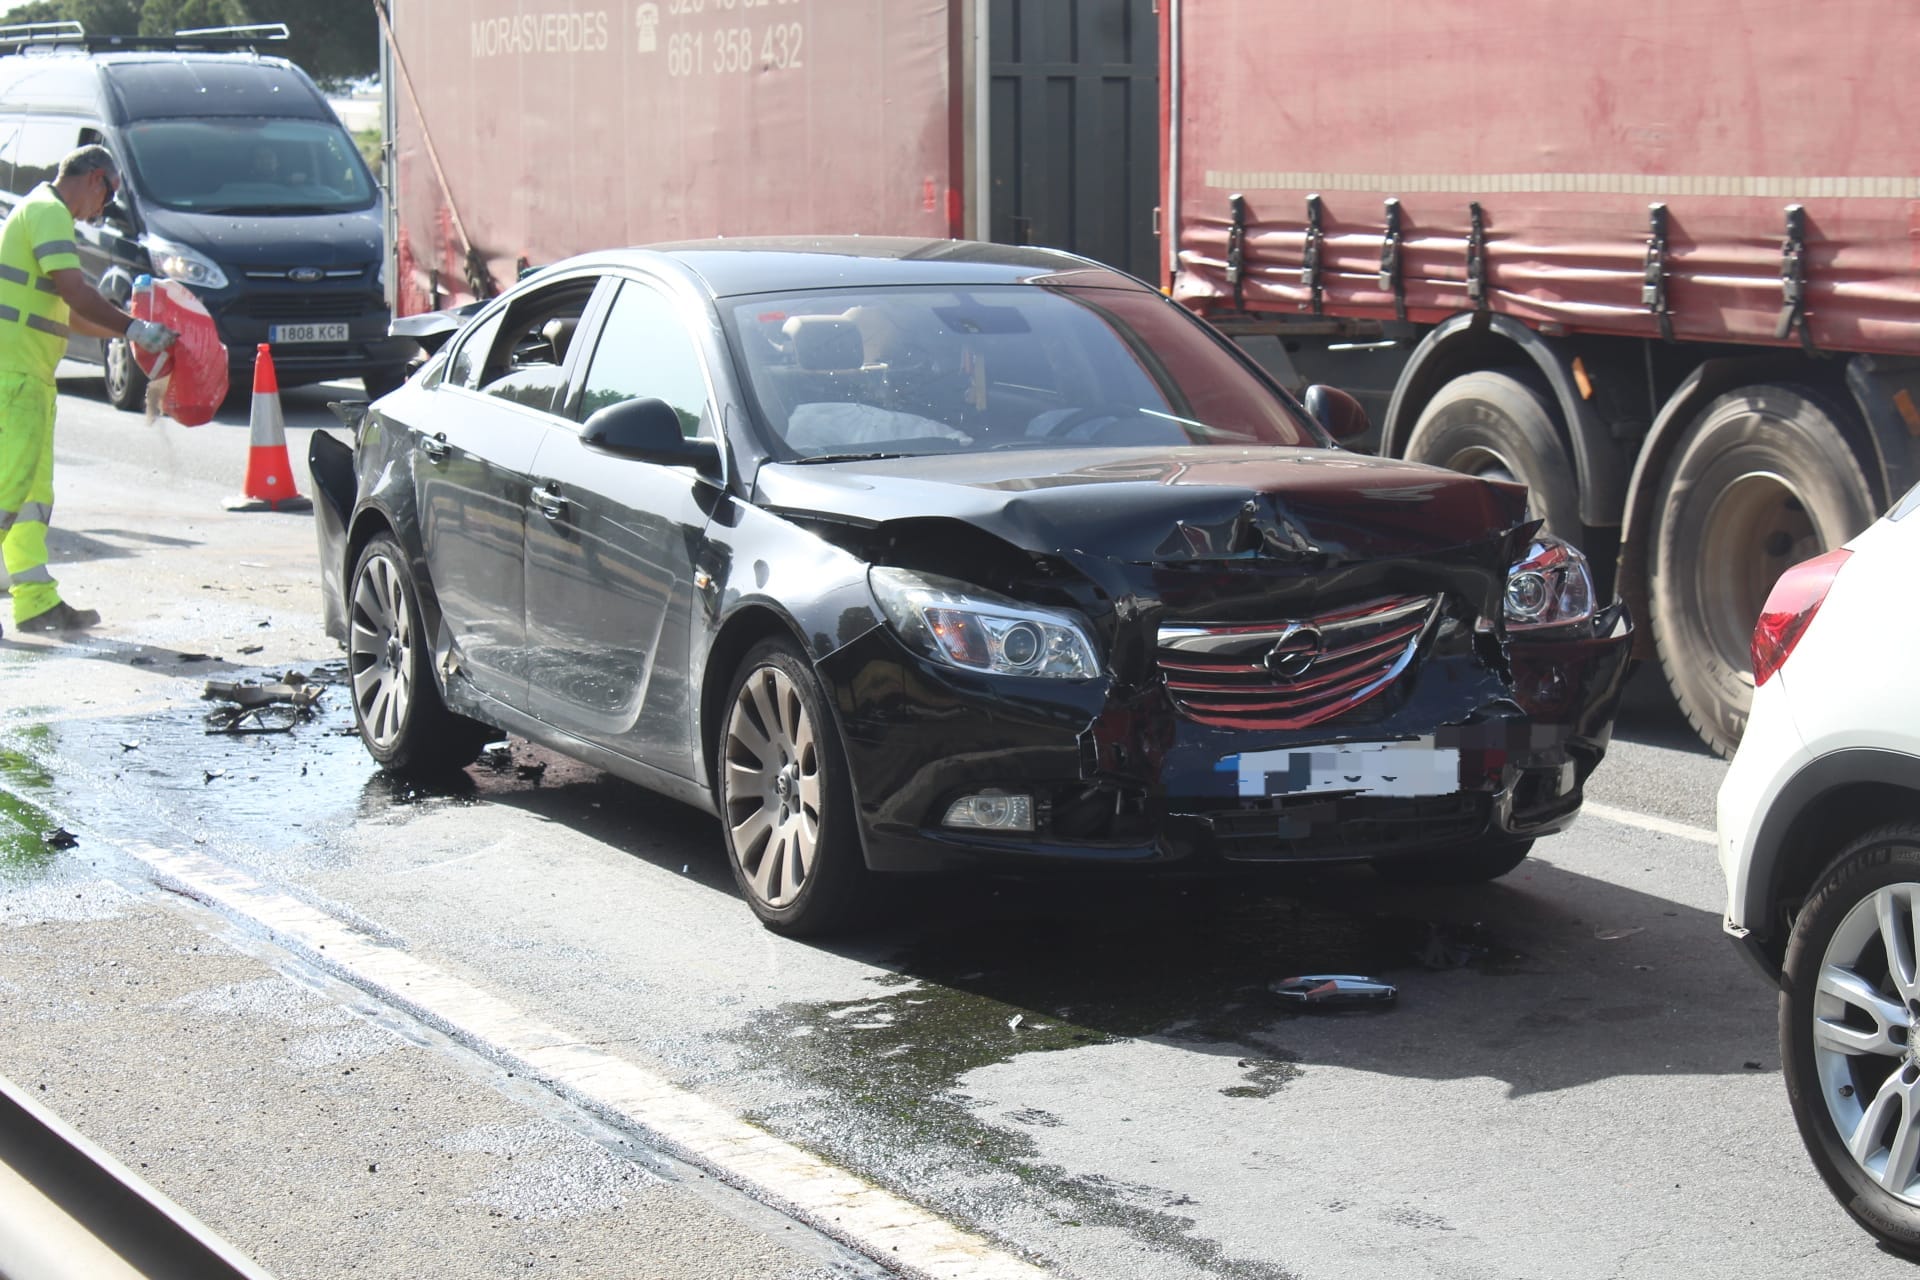 Tres vehículos implicados en un accidente en Carbajosa de la Sagrada. Fotos Carlos H. G